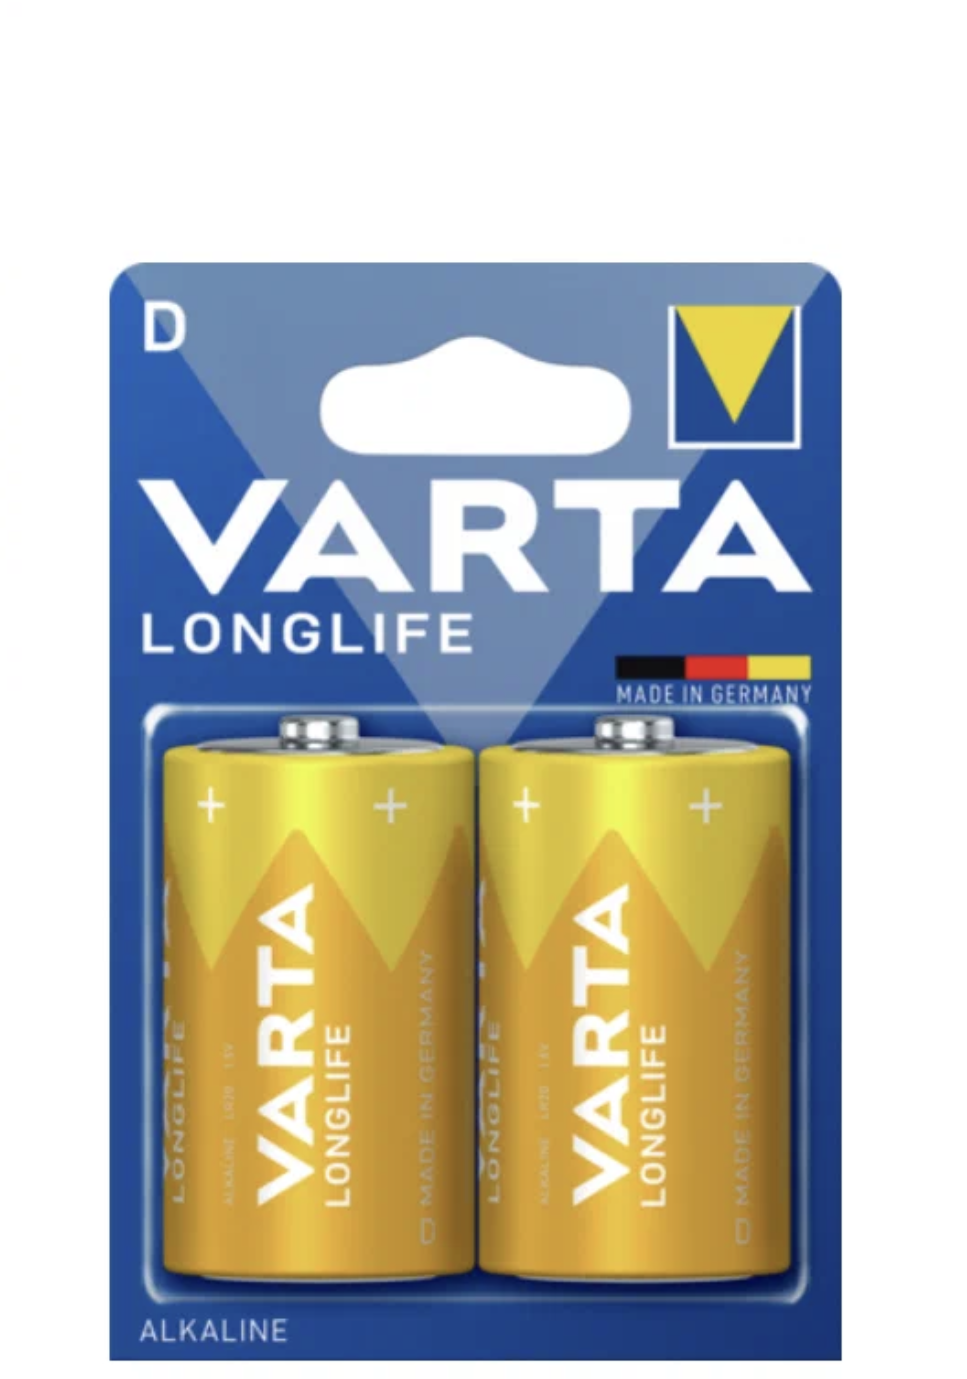   / Varta -  Longlife mono D LR20 1,5V 2 